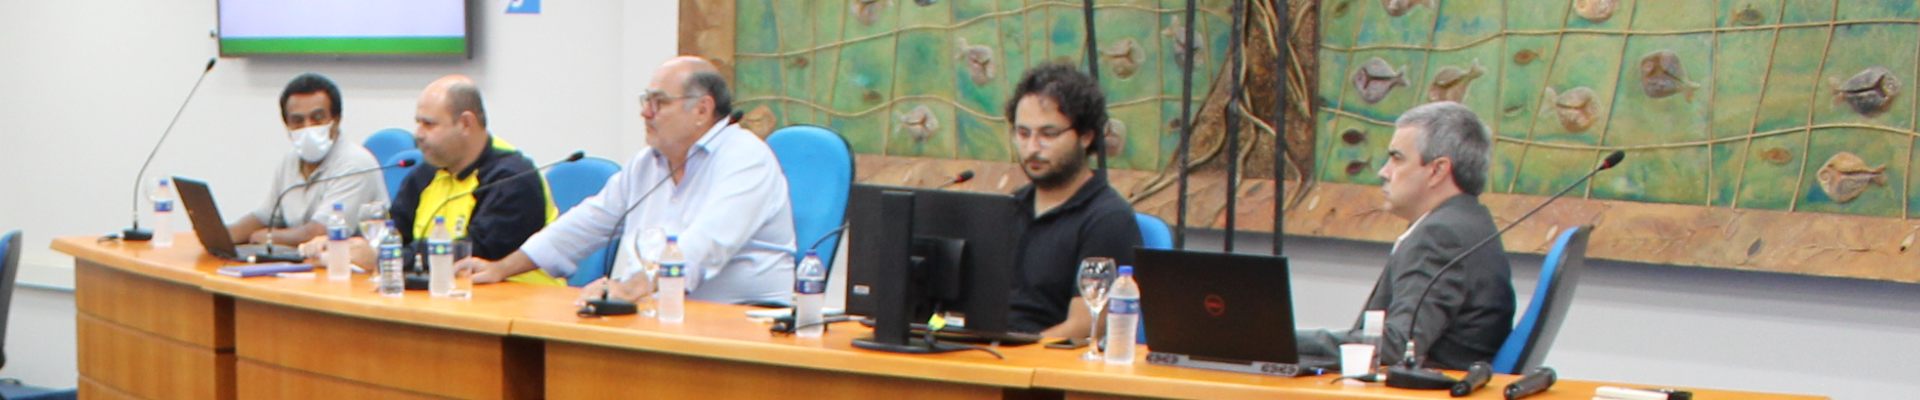 Crea-MT participa de audiência pública da Semob que apresentou diagnóstico preliminar da Mobilidade Urbana de Cuiabá